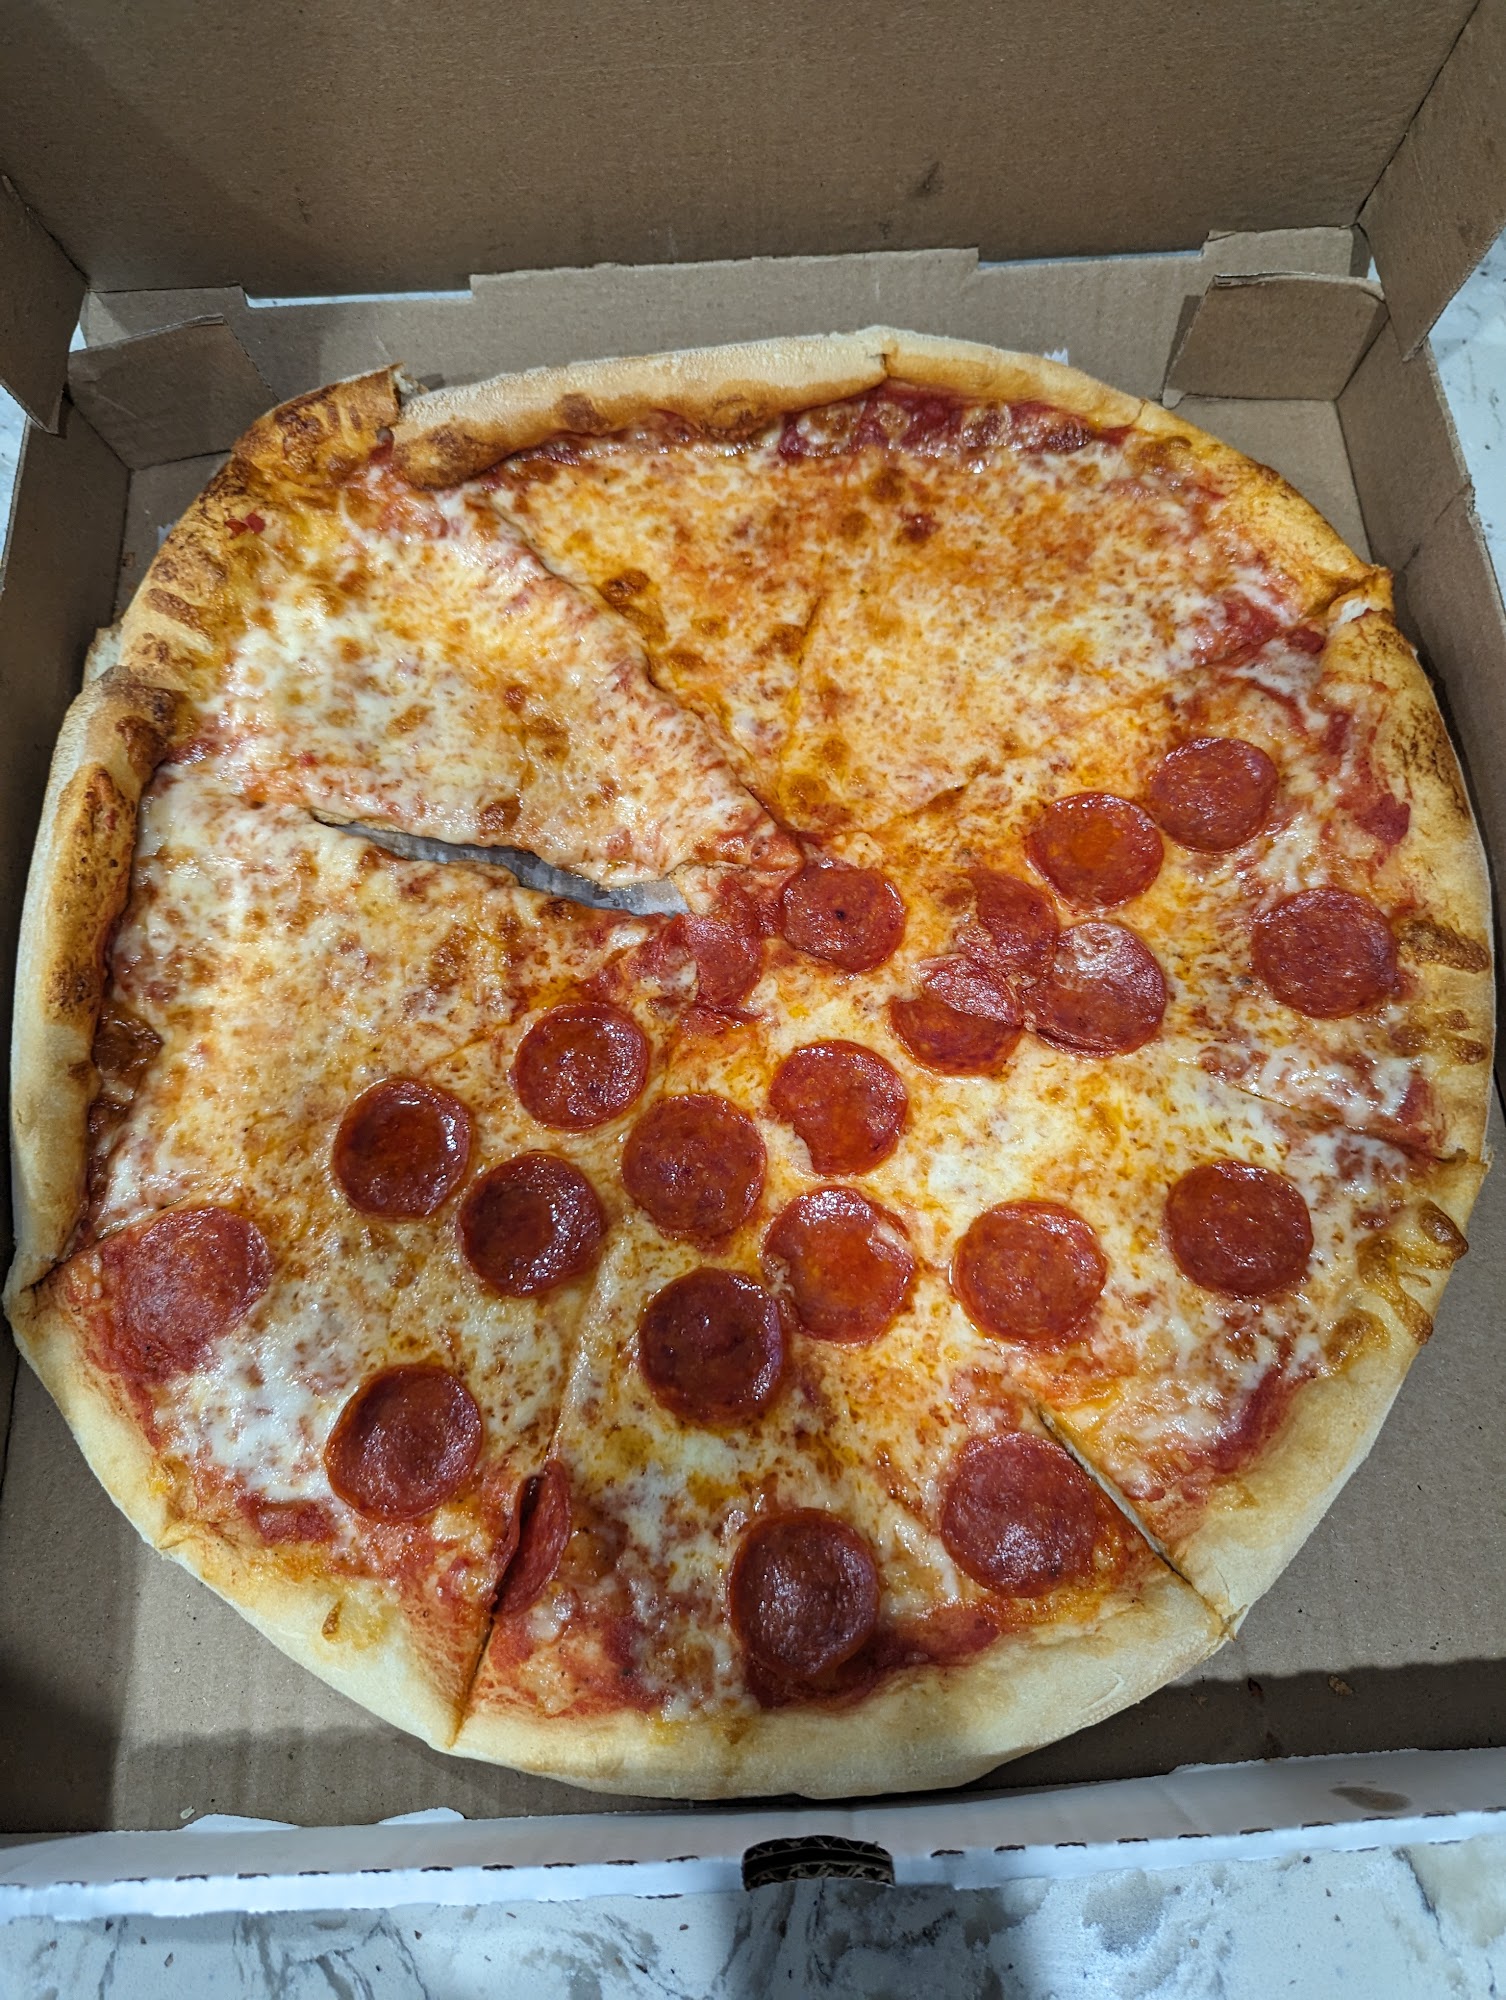 Roberto's Pizza